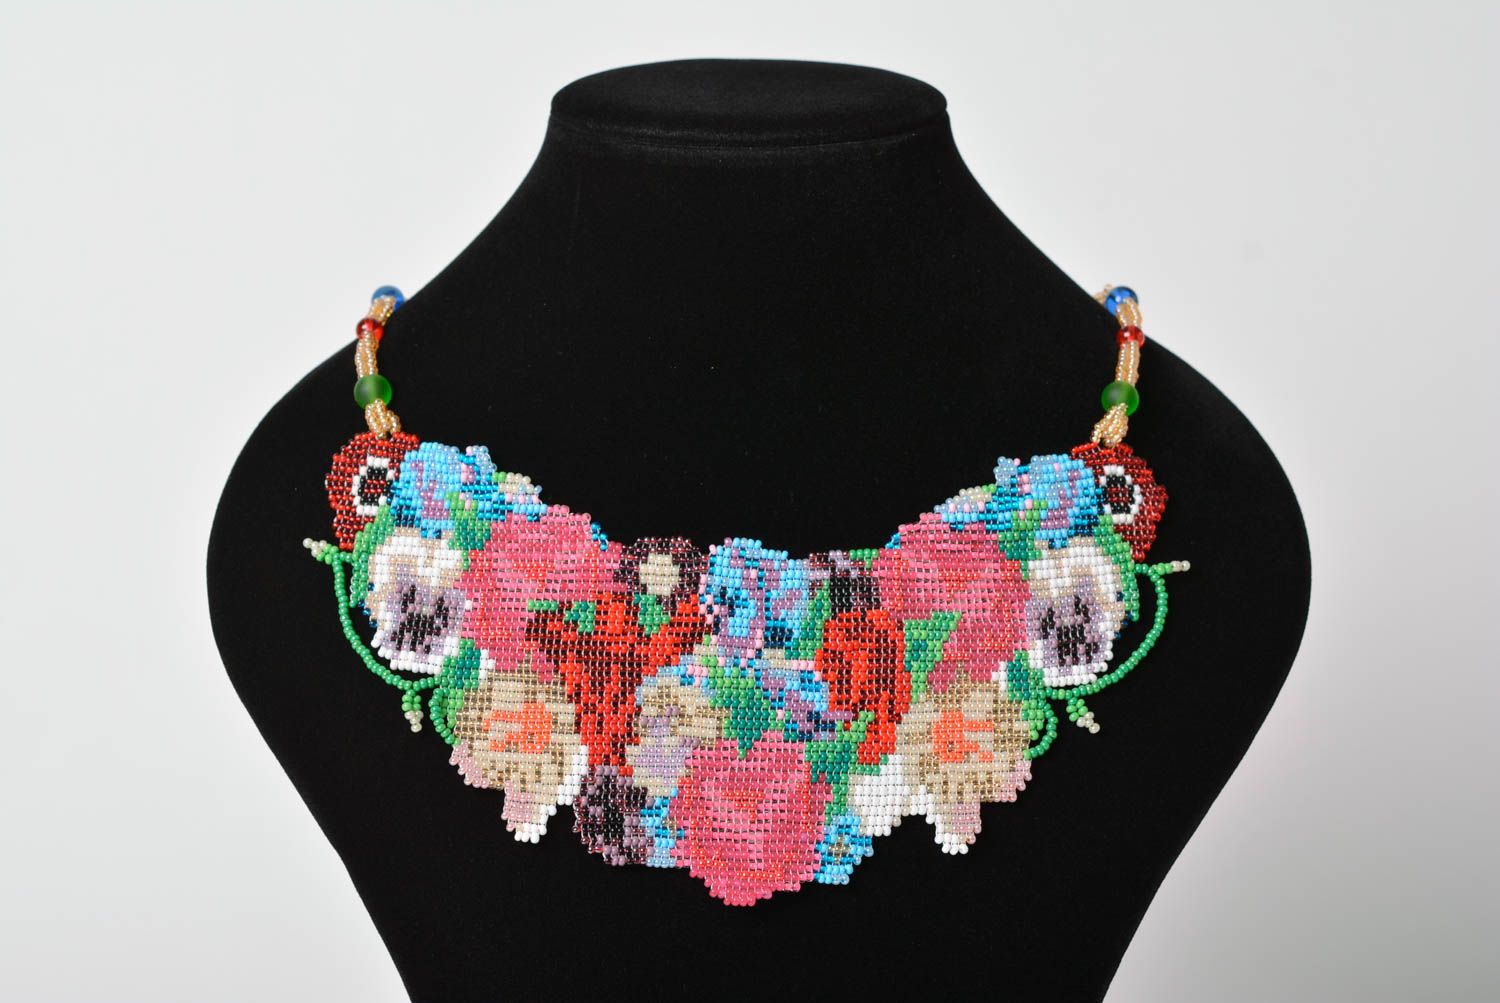 Ожерелье из бисера в технике ткачества разноцветное нежное красивое хэнд мейд фото 3